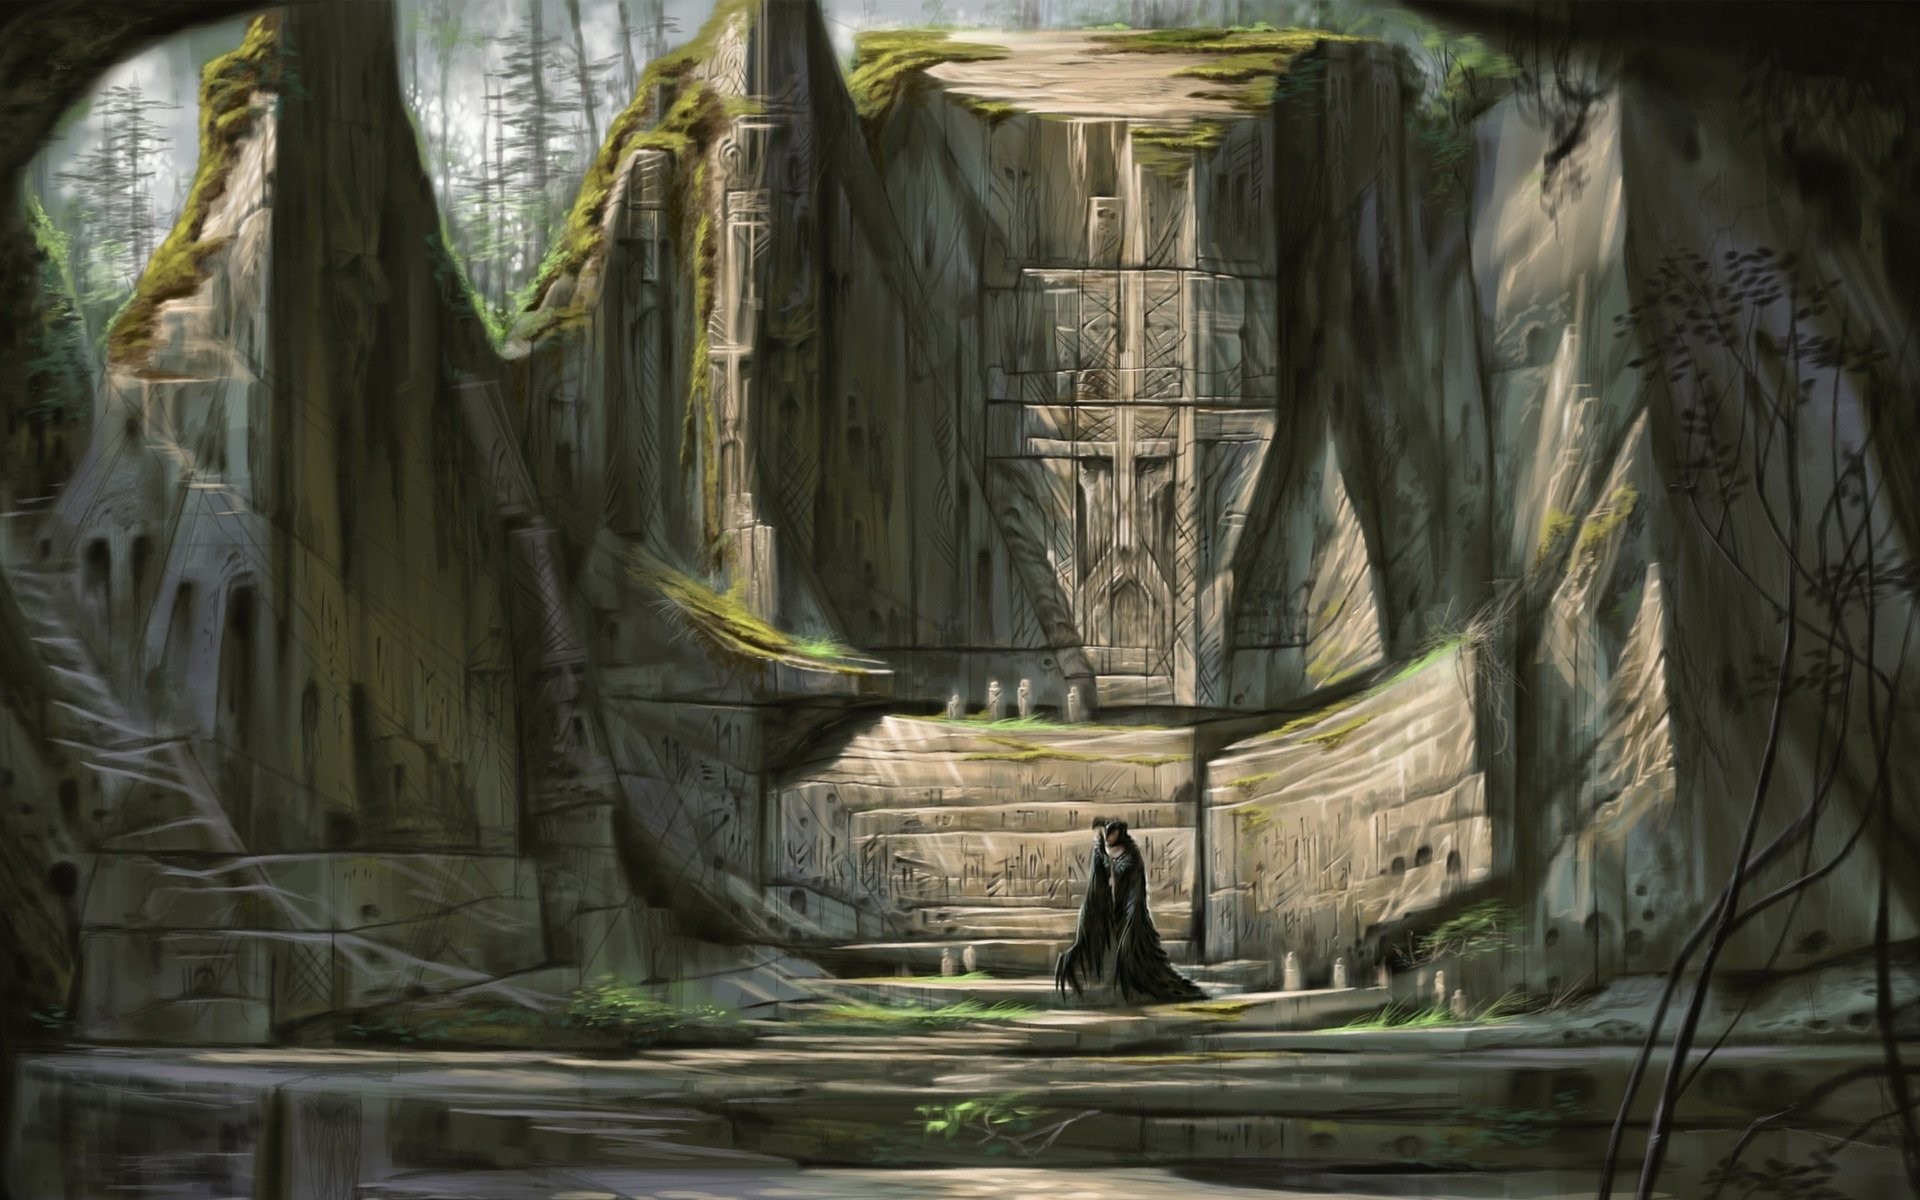 General 1920x1200 The Elder Scrolls V: Skyrim artwork video games shrine RPG video game art fantasy art PC gaming